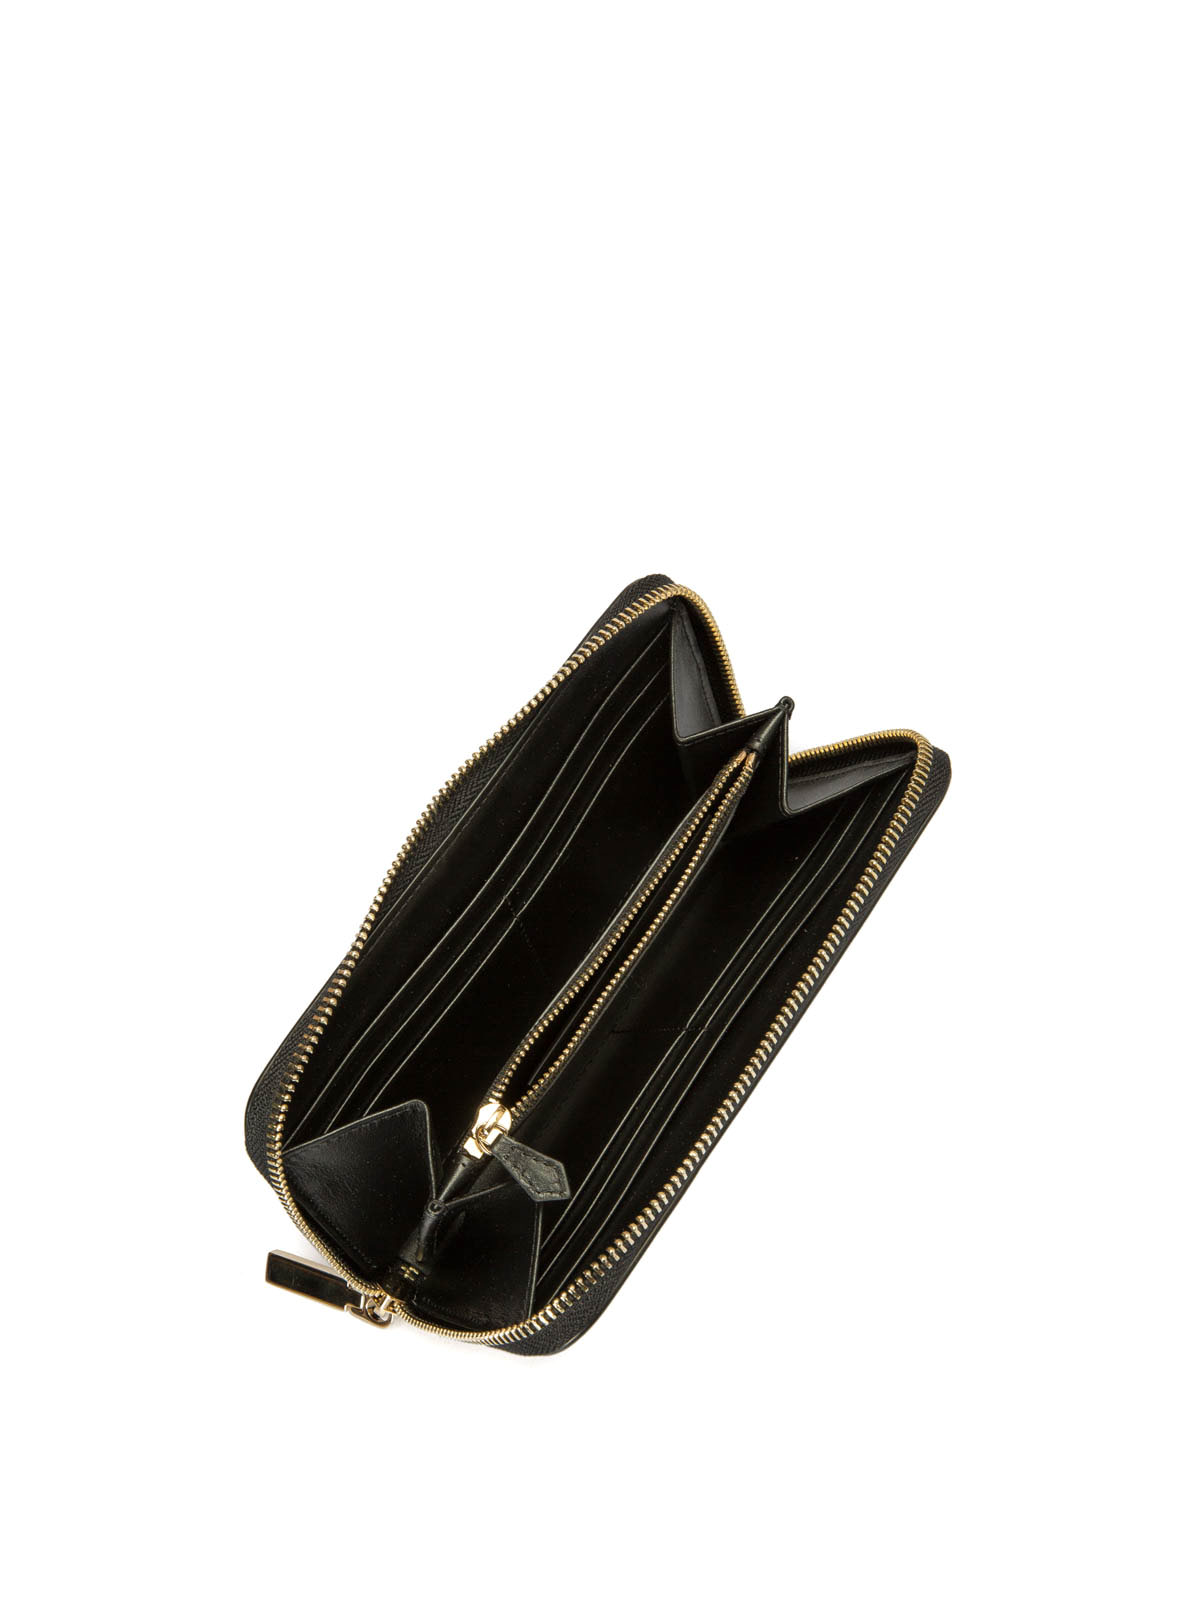 Wallets & purses Versace - Medusa zip around wallet 